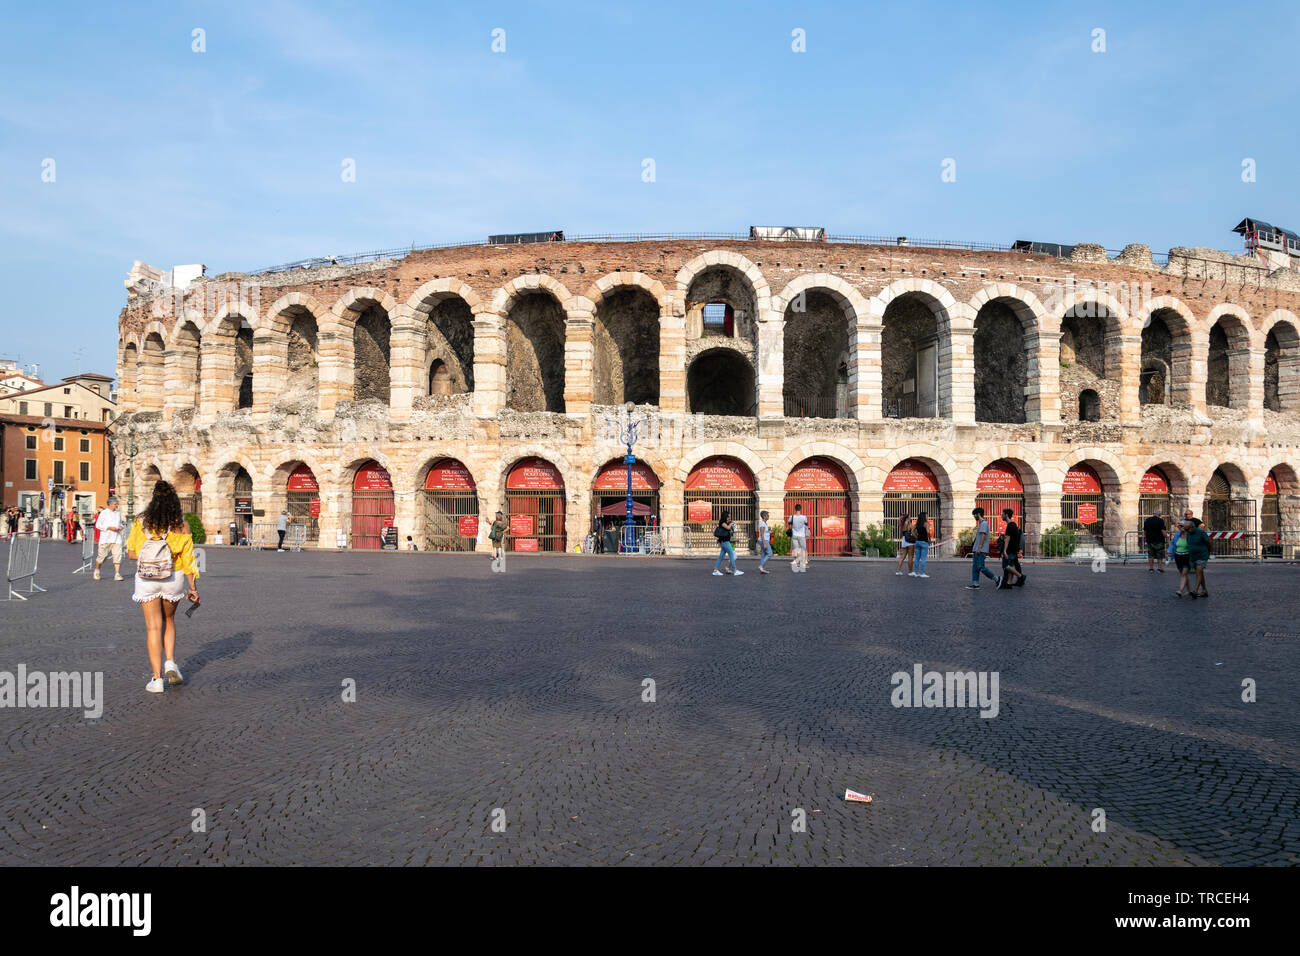 Una vista dell'Anfiteatro Romano in Piazza Bra, Verona, Italia Foto Stock